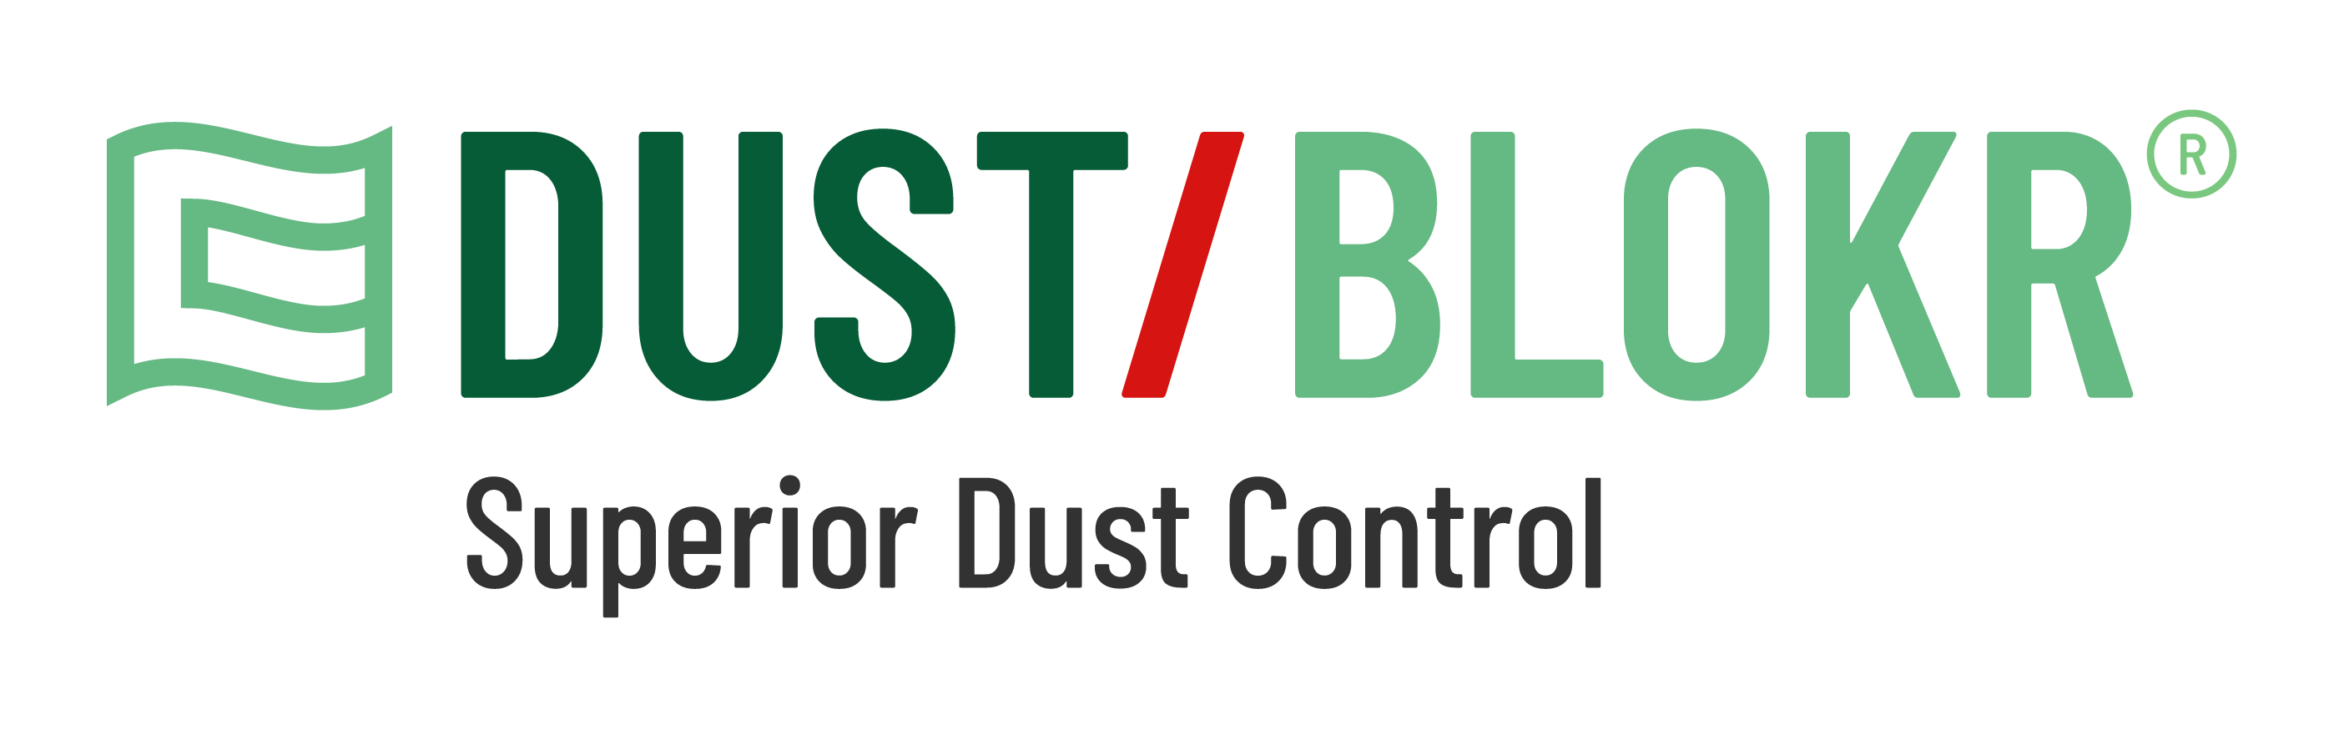 Dust/Blokr